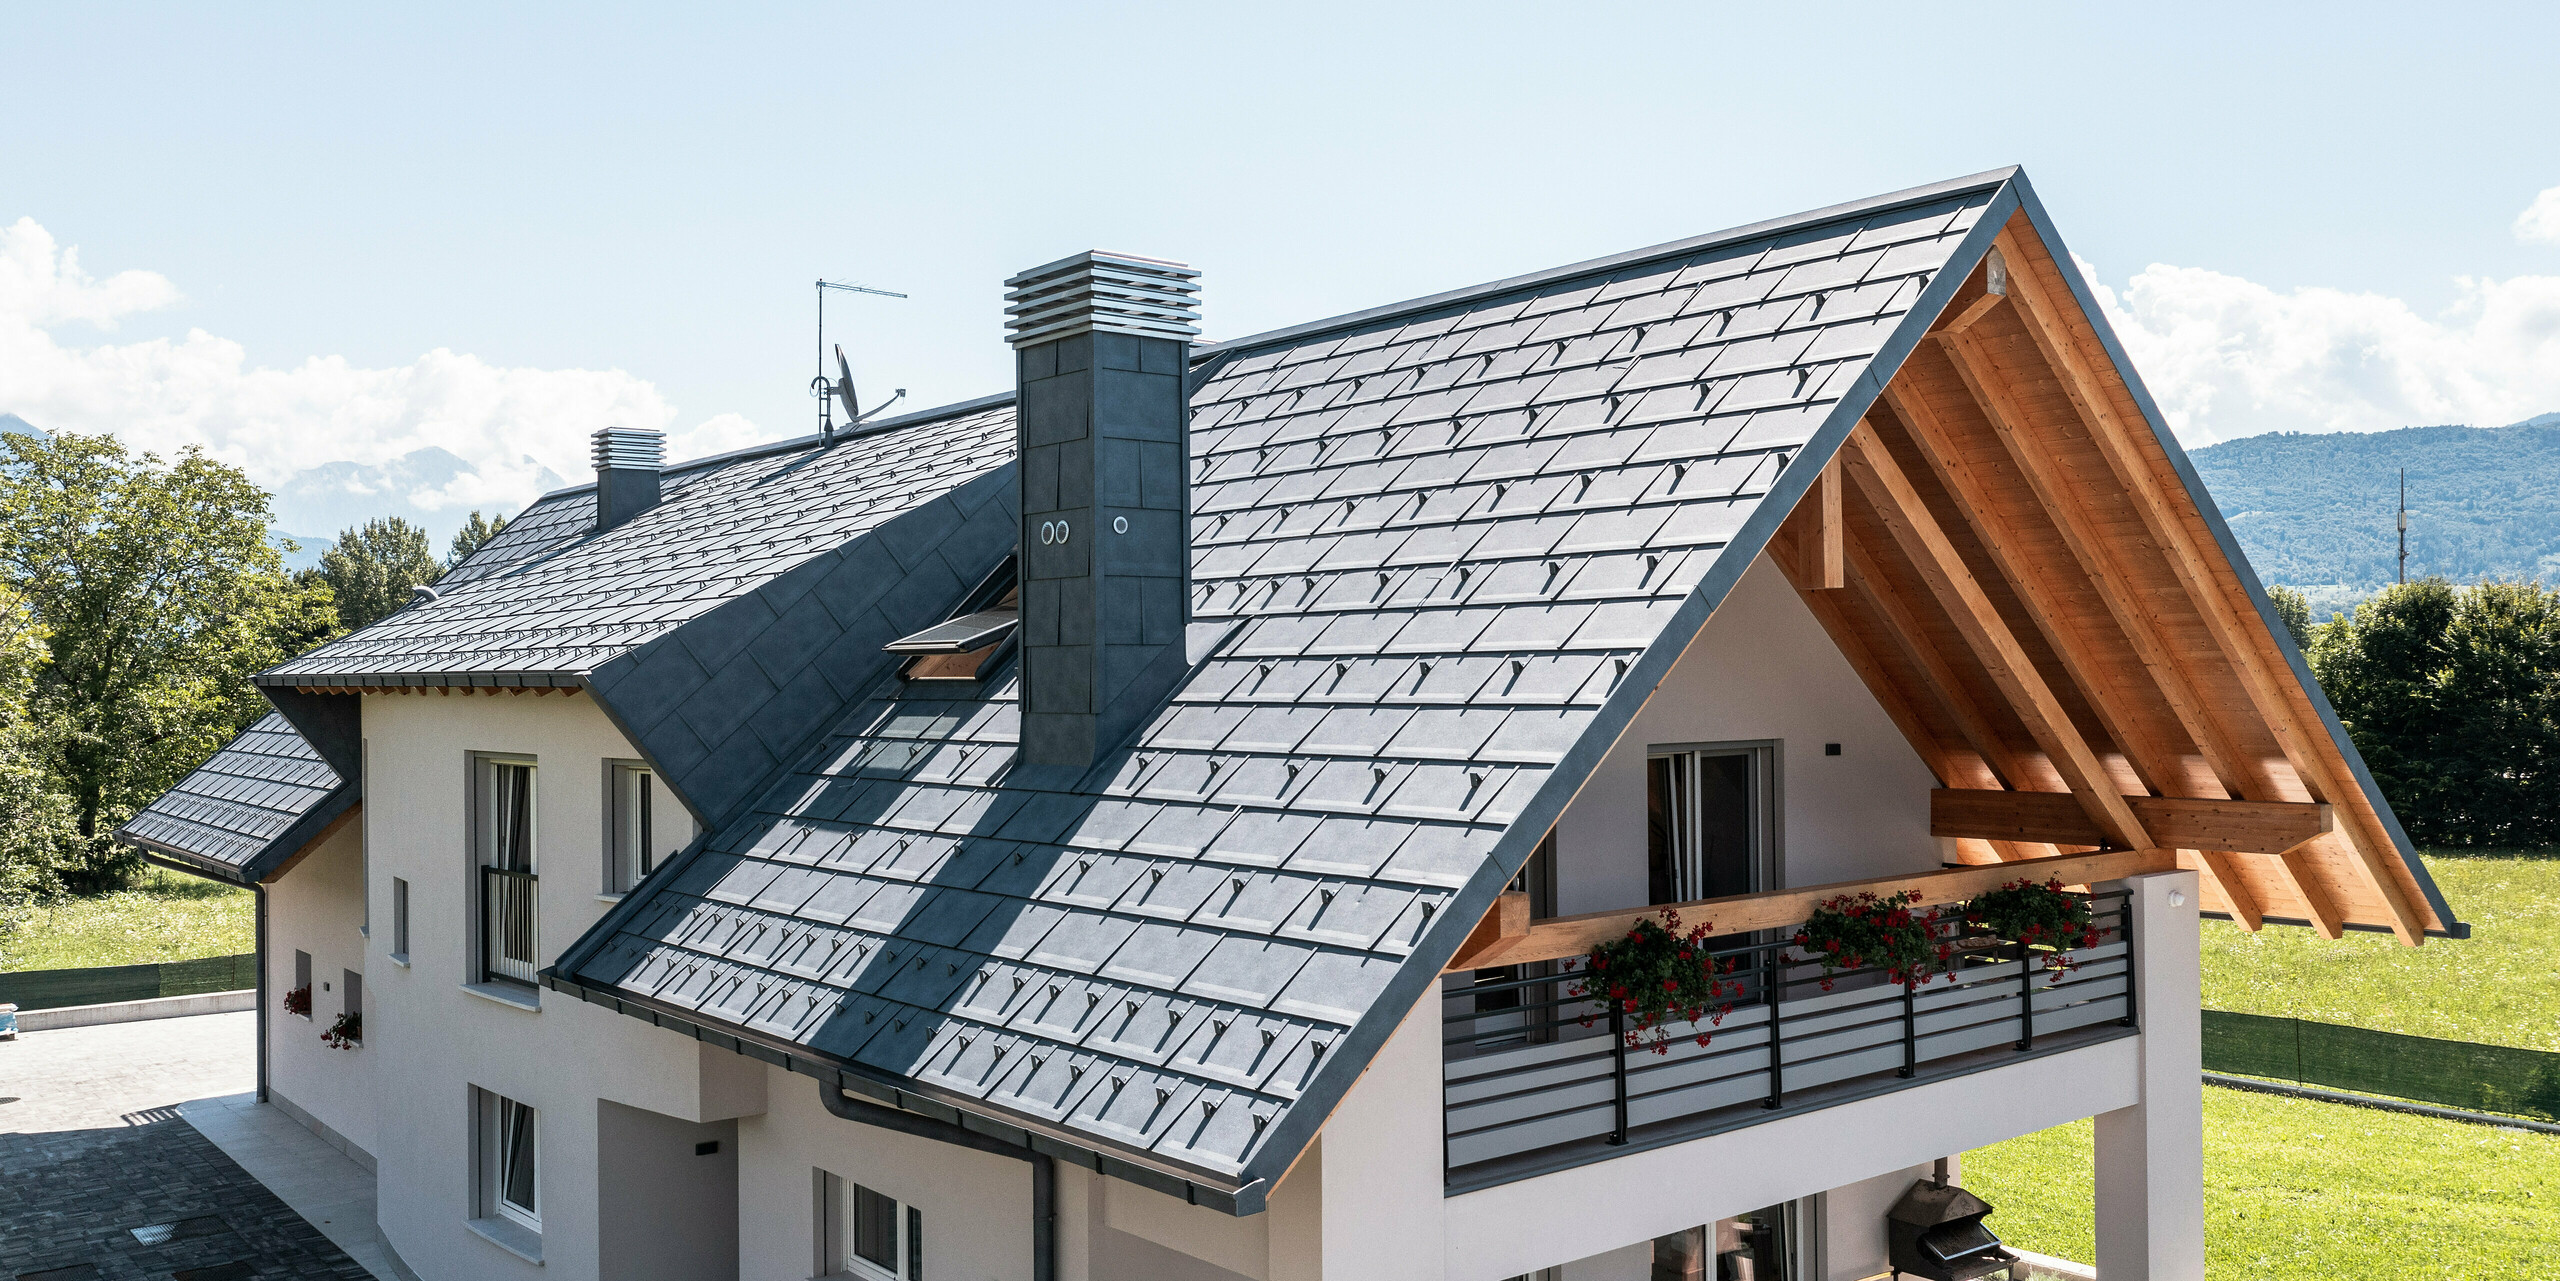 Tento malebný rodinný dům v Bellunu je opláštěný střešním panelem PREFA R.16 v barvě P.10 Antracit, který nabízí styl i funkčnost. Kombinace moderní hliníkové střechy a tradičních dřevěných prvků pod střechou vytváří přitažlivý celkový obraz, který dokonale zapadá do přírodního prostředí a horského pozadí Itálie.